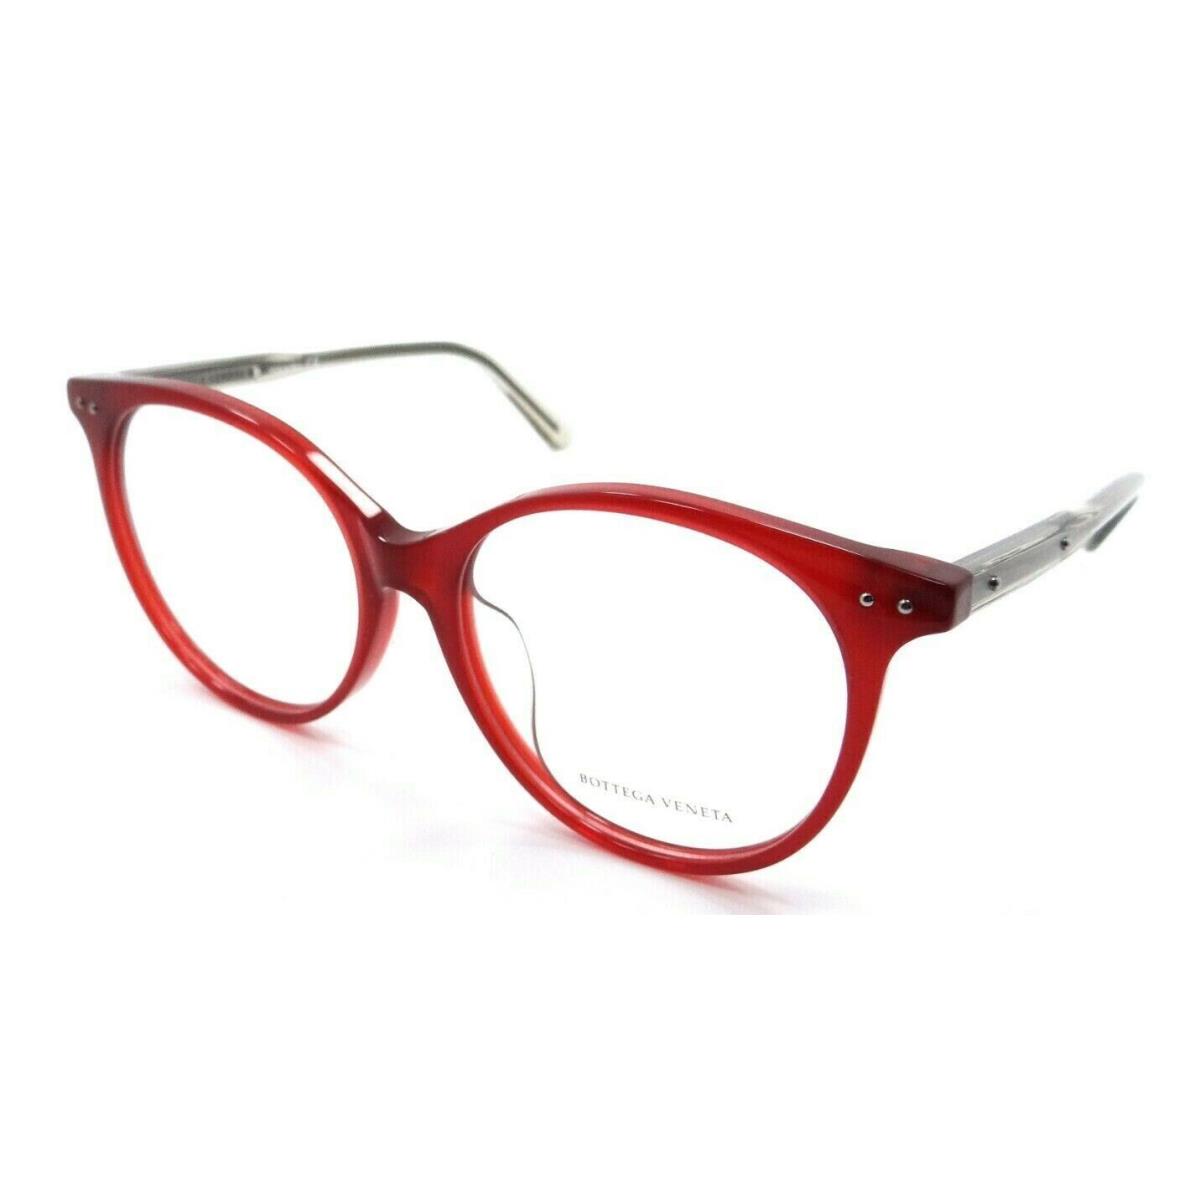 Bottega Veneta Eyeglasses Frames BV0081OA 003 54-16-145 Red Italy Asian Fit